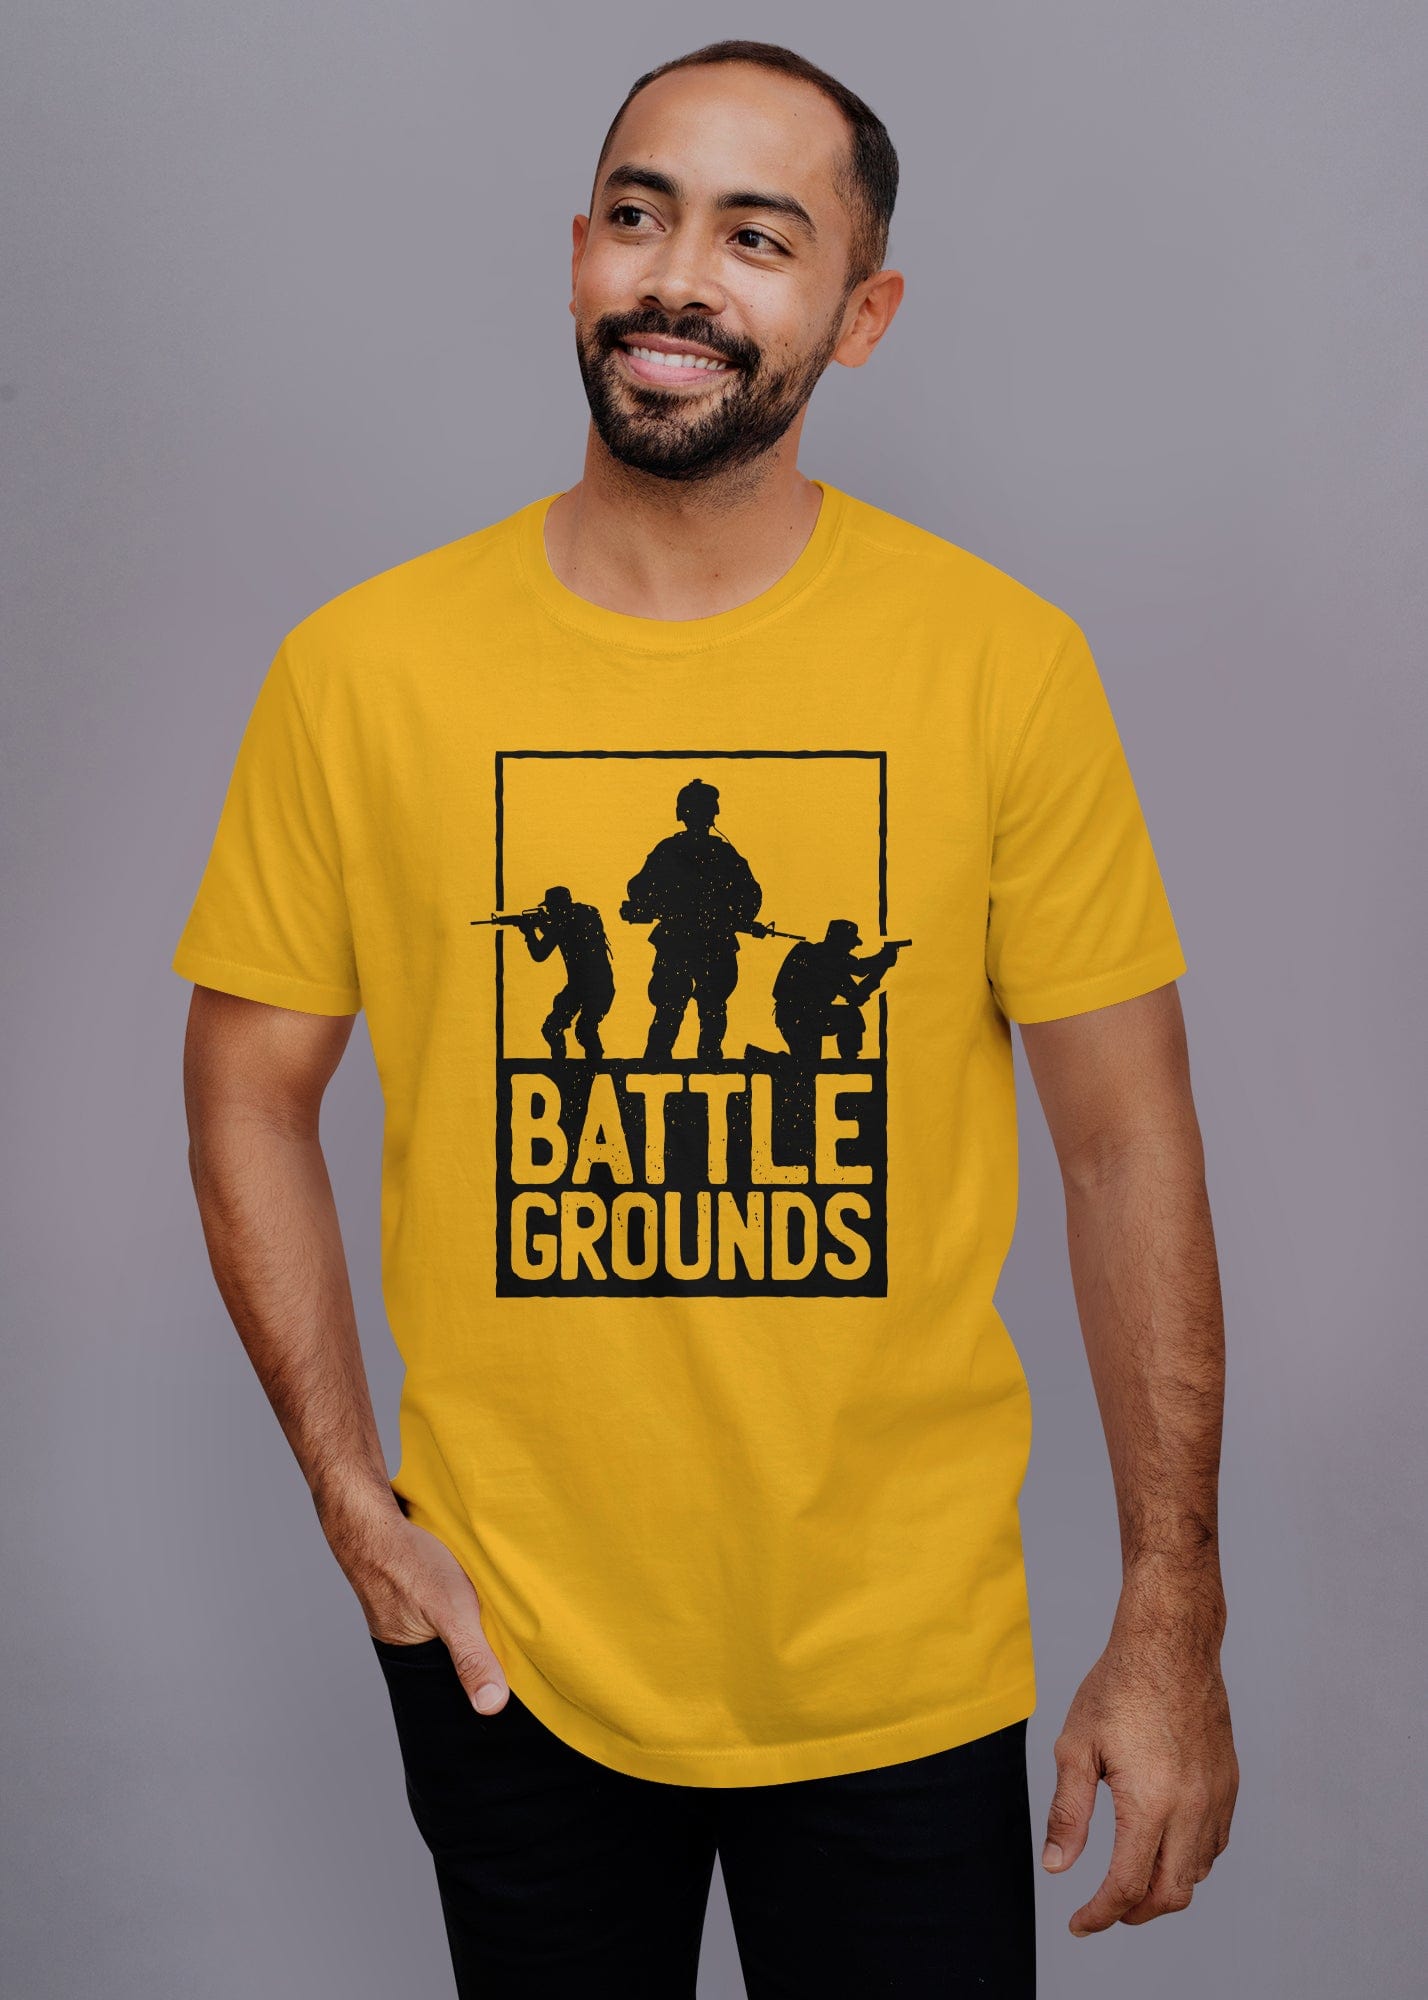 Battleground Printed Half Sleeve Premium Cotton T-shirt For Men